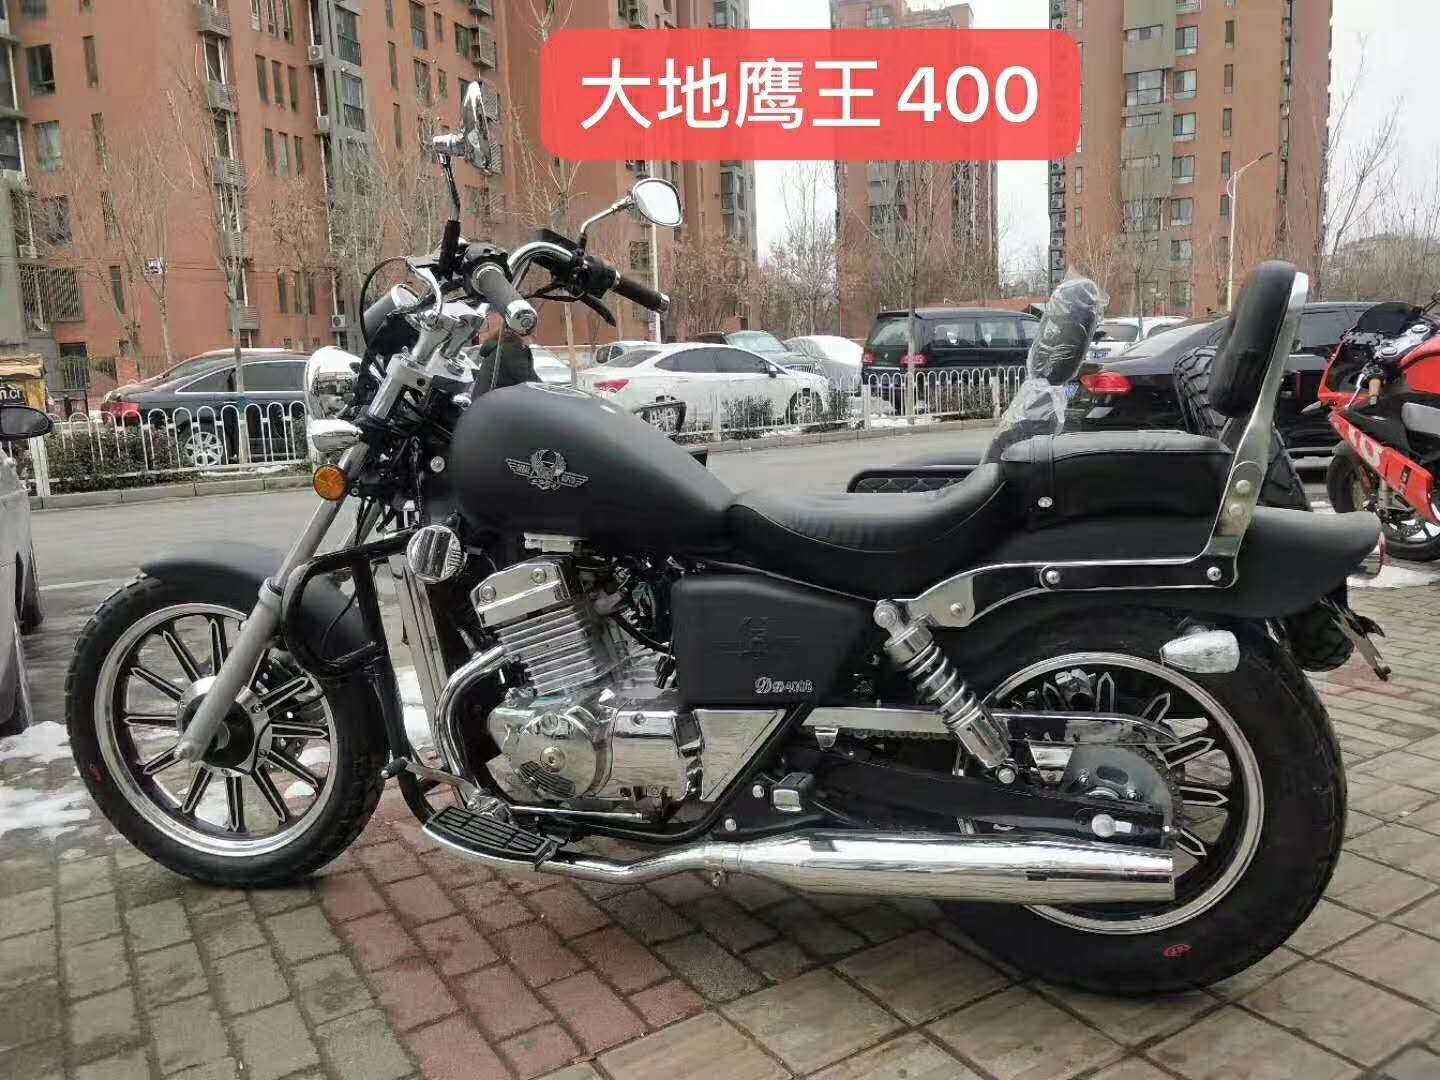 天津大地鹰王400摩托车多少钱一台 出厂价格